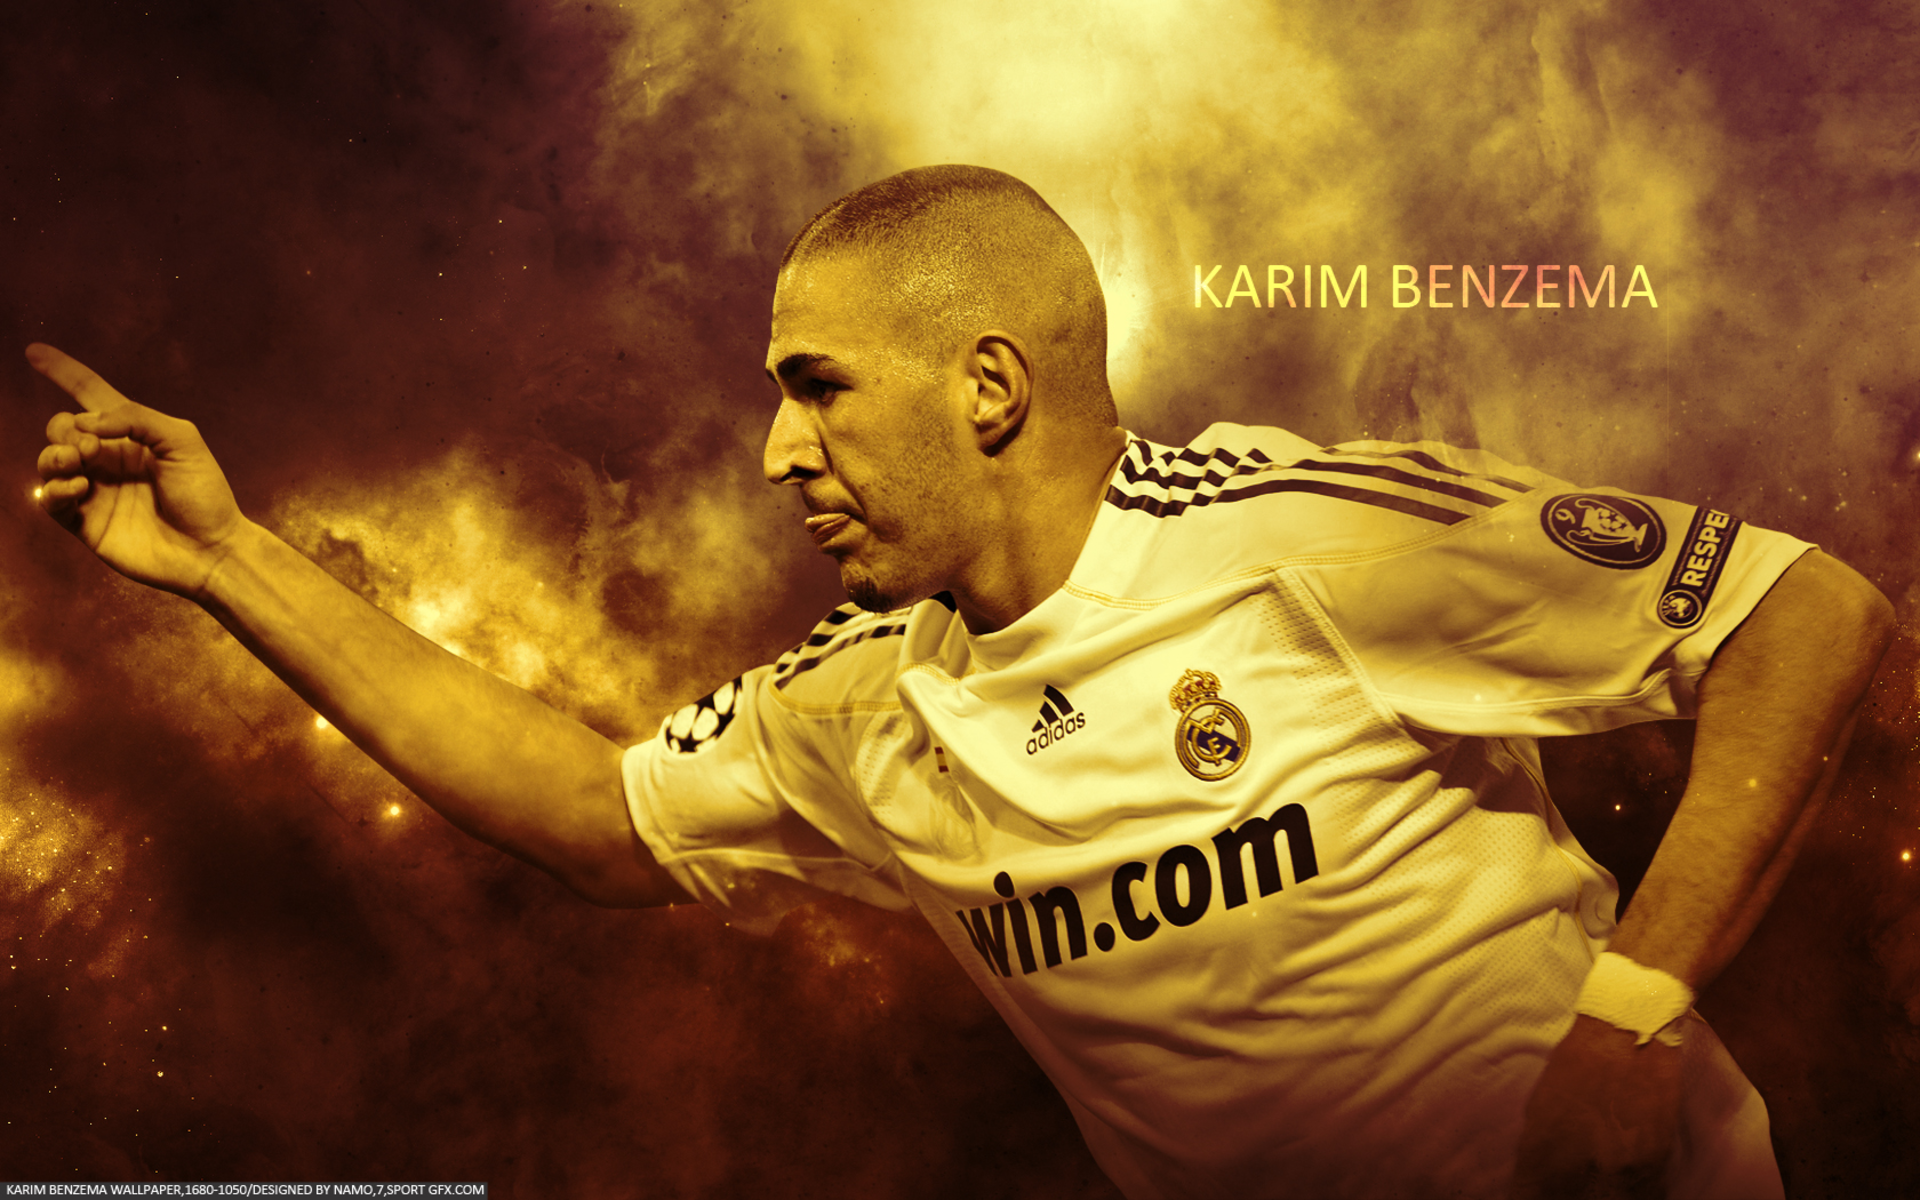 Karim Benzema hiện là một trong những tiền đạo hàng đầu thế giới. Xem hình ảnh để được ngắm nhìn sự mạnh mẽ và uyển chuyển của anh ta trên sân cỏ.